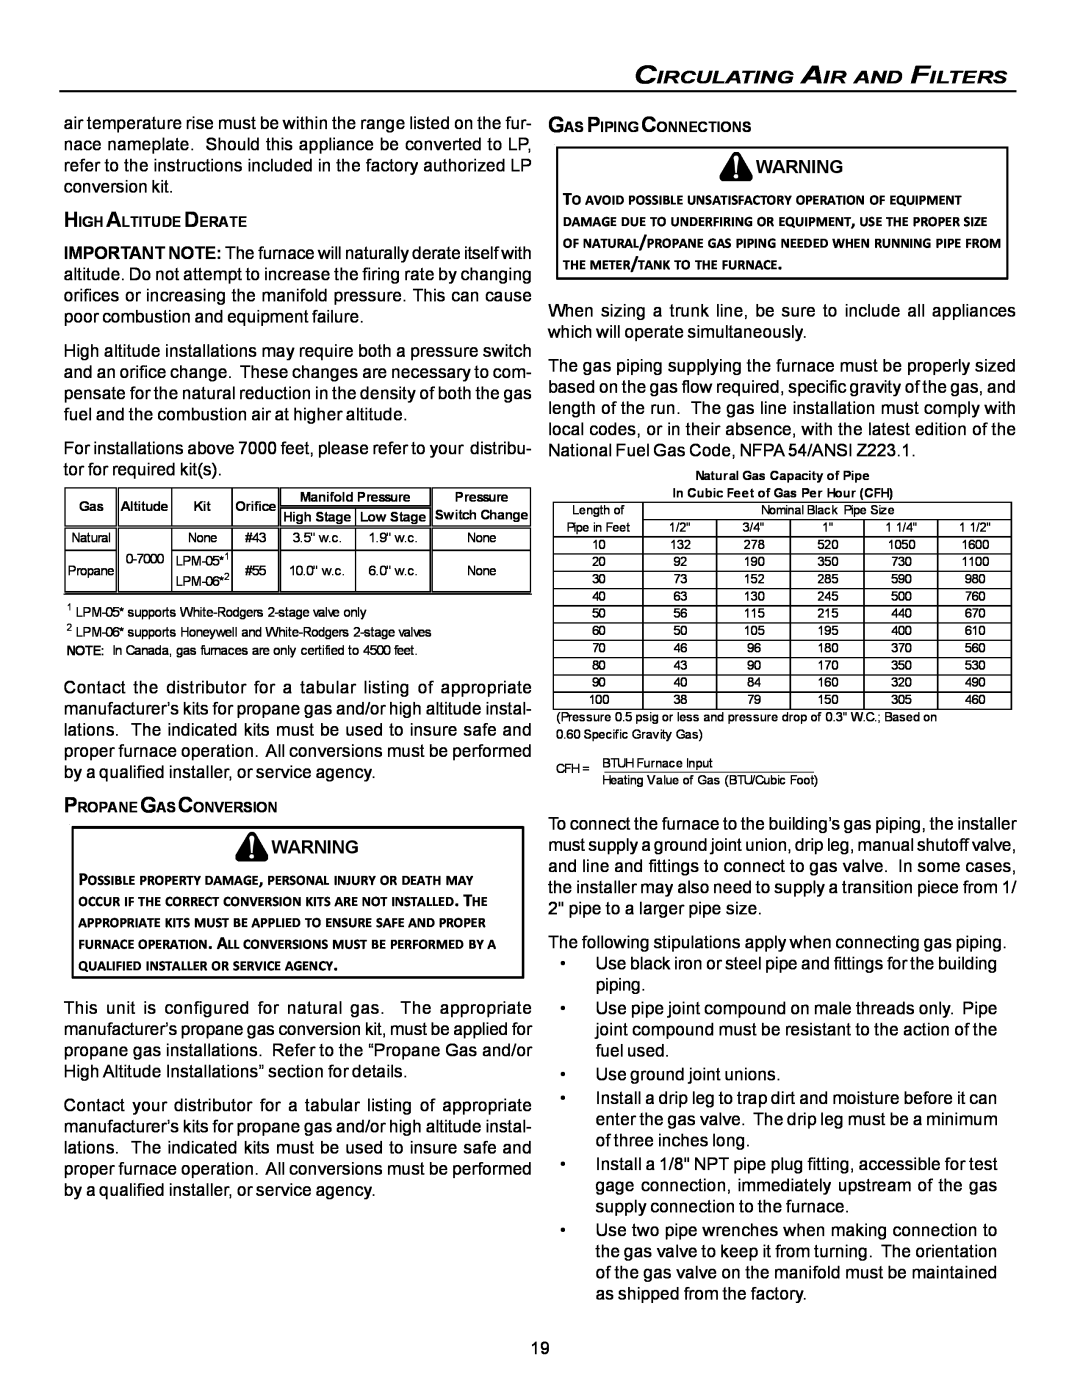 Goodman Mfg VC8 instruction manual Circulating Air And Filters 